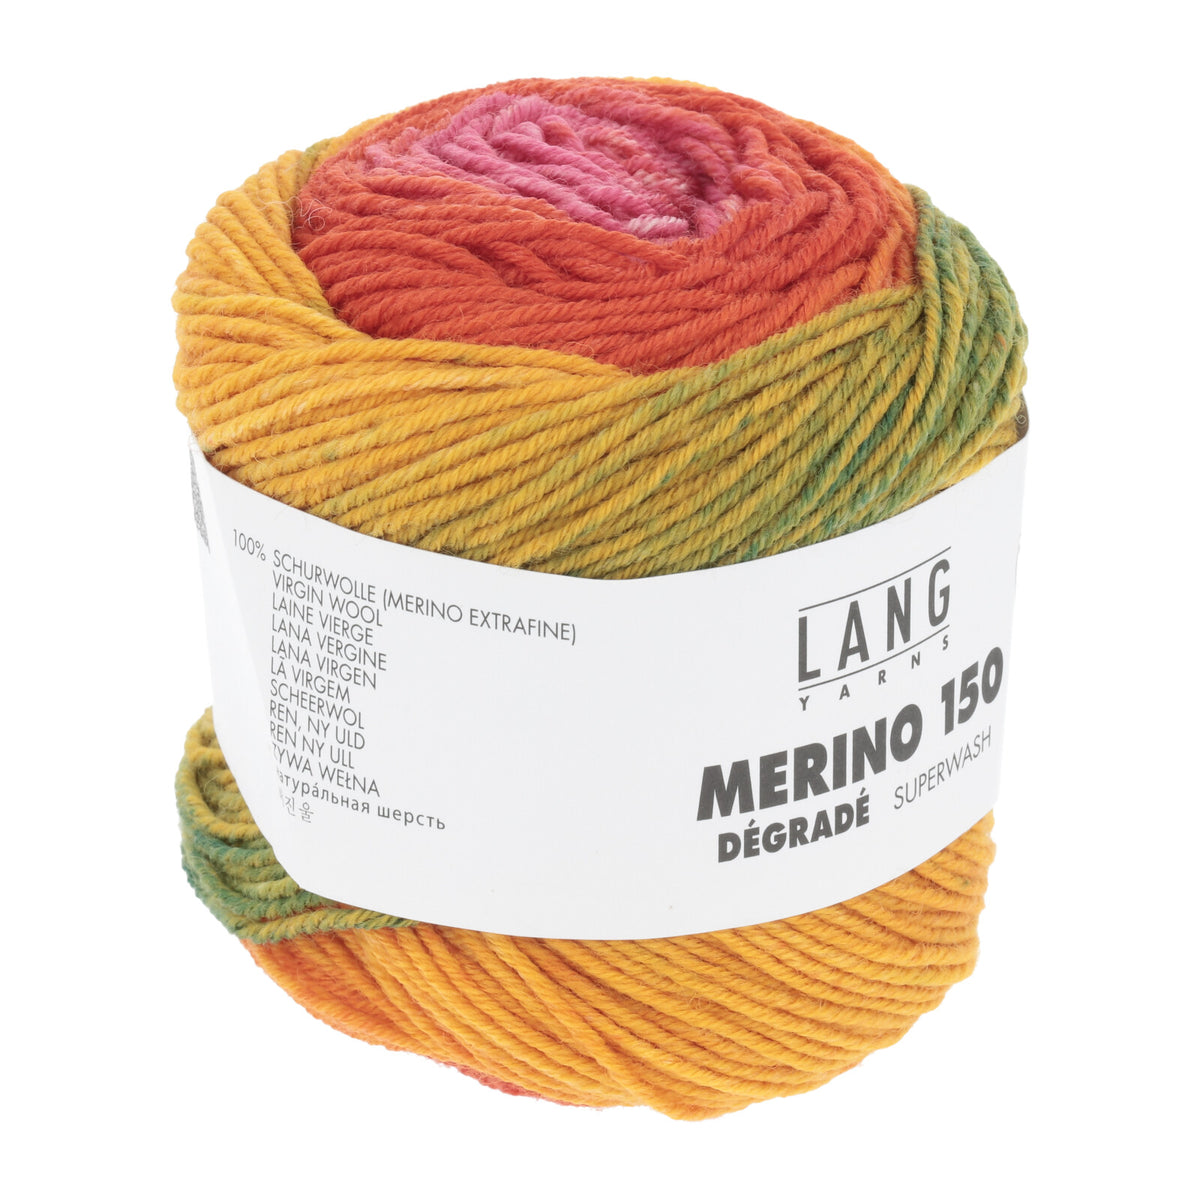 Lang Yarns Merino 150 - 60 - Ll 150m/50g - Needle Thickness 3 - 3,5